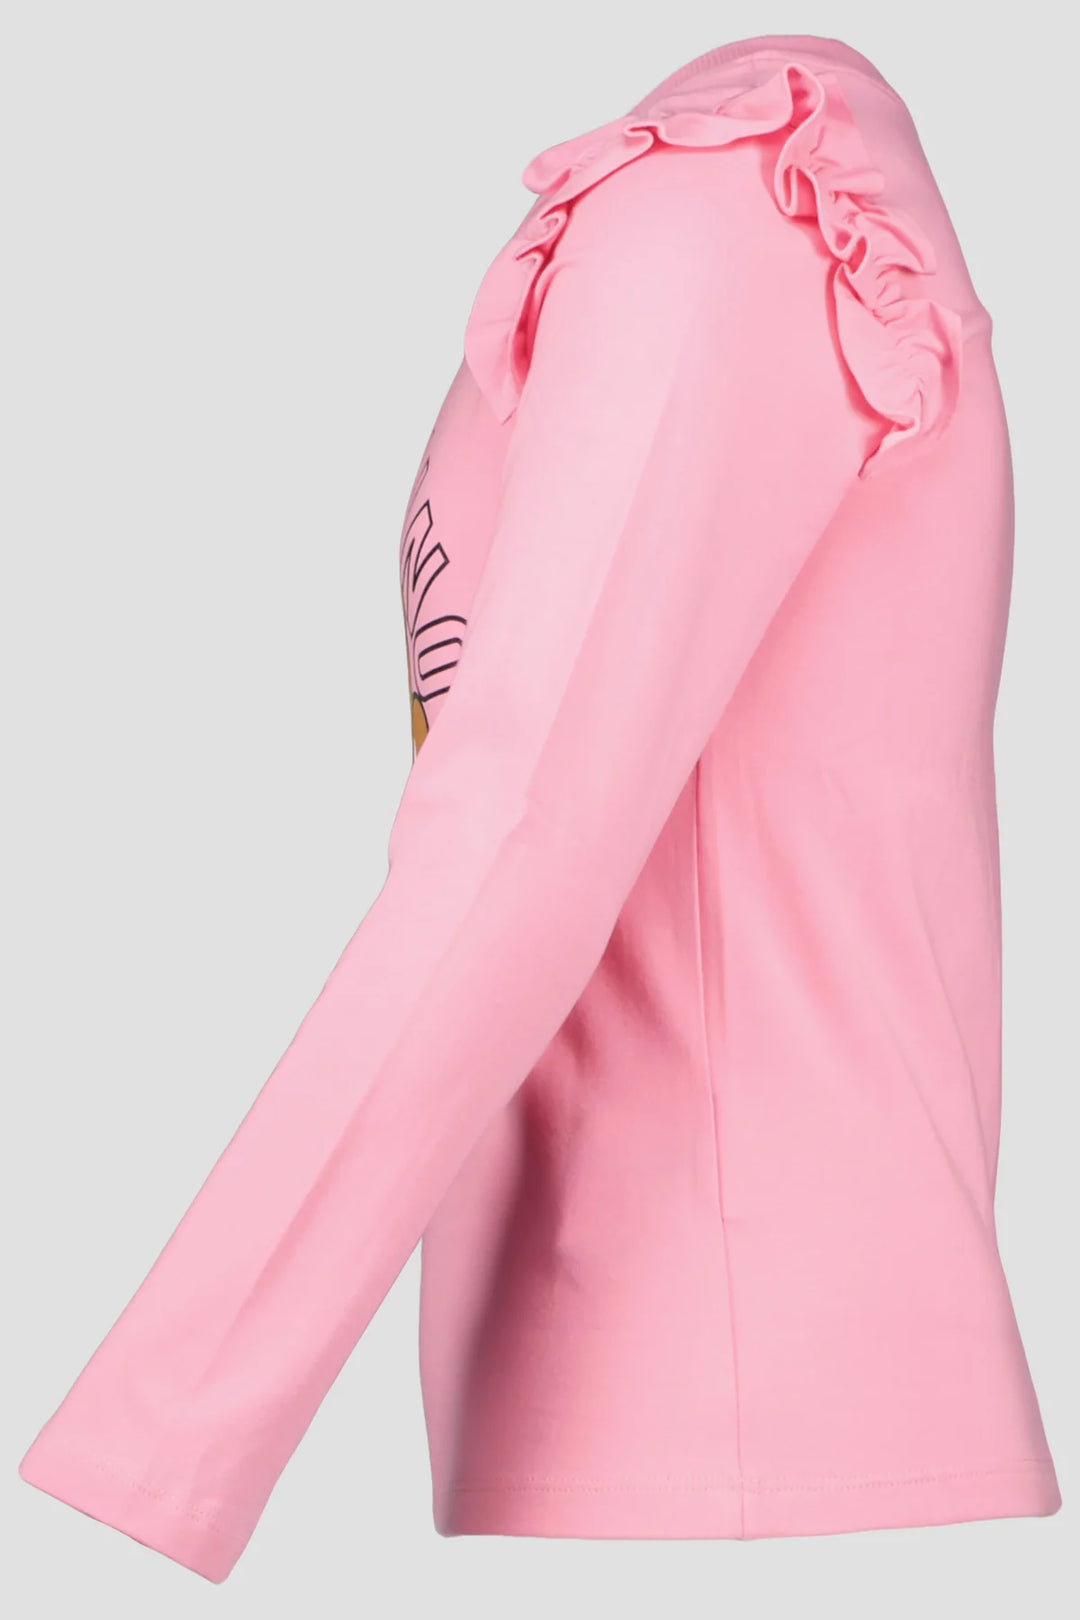 Moschino Girl RUFFLE Long Sleeve Tee - Sweet Pink